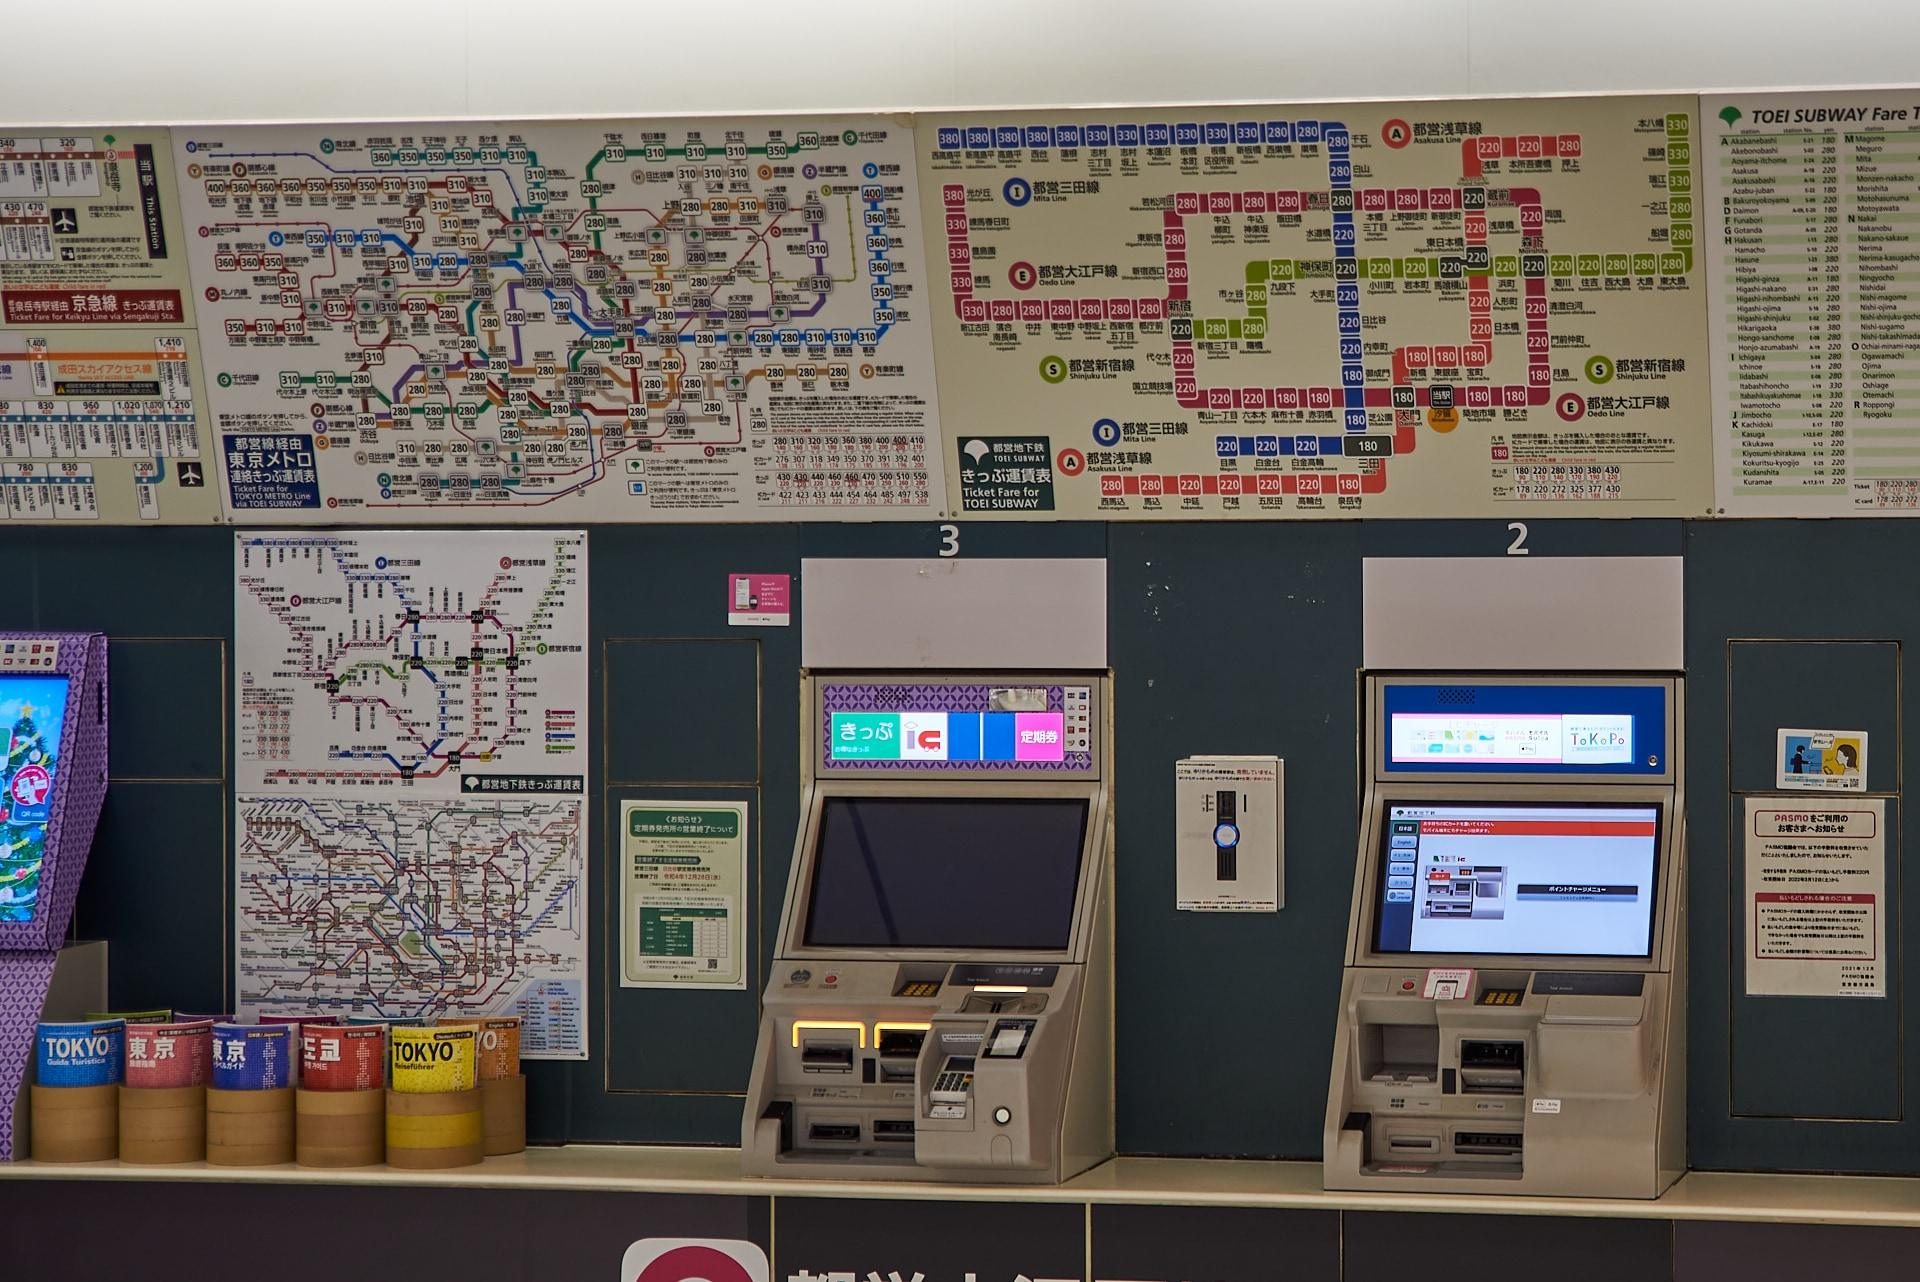 Автоматы для пополнения карточек и карта метро. Чо там, зовите дизайнеров, чтобы перерисовали!